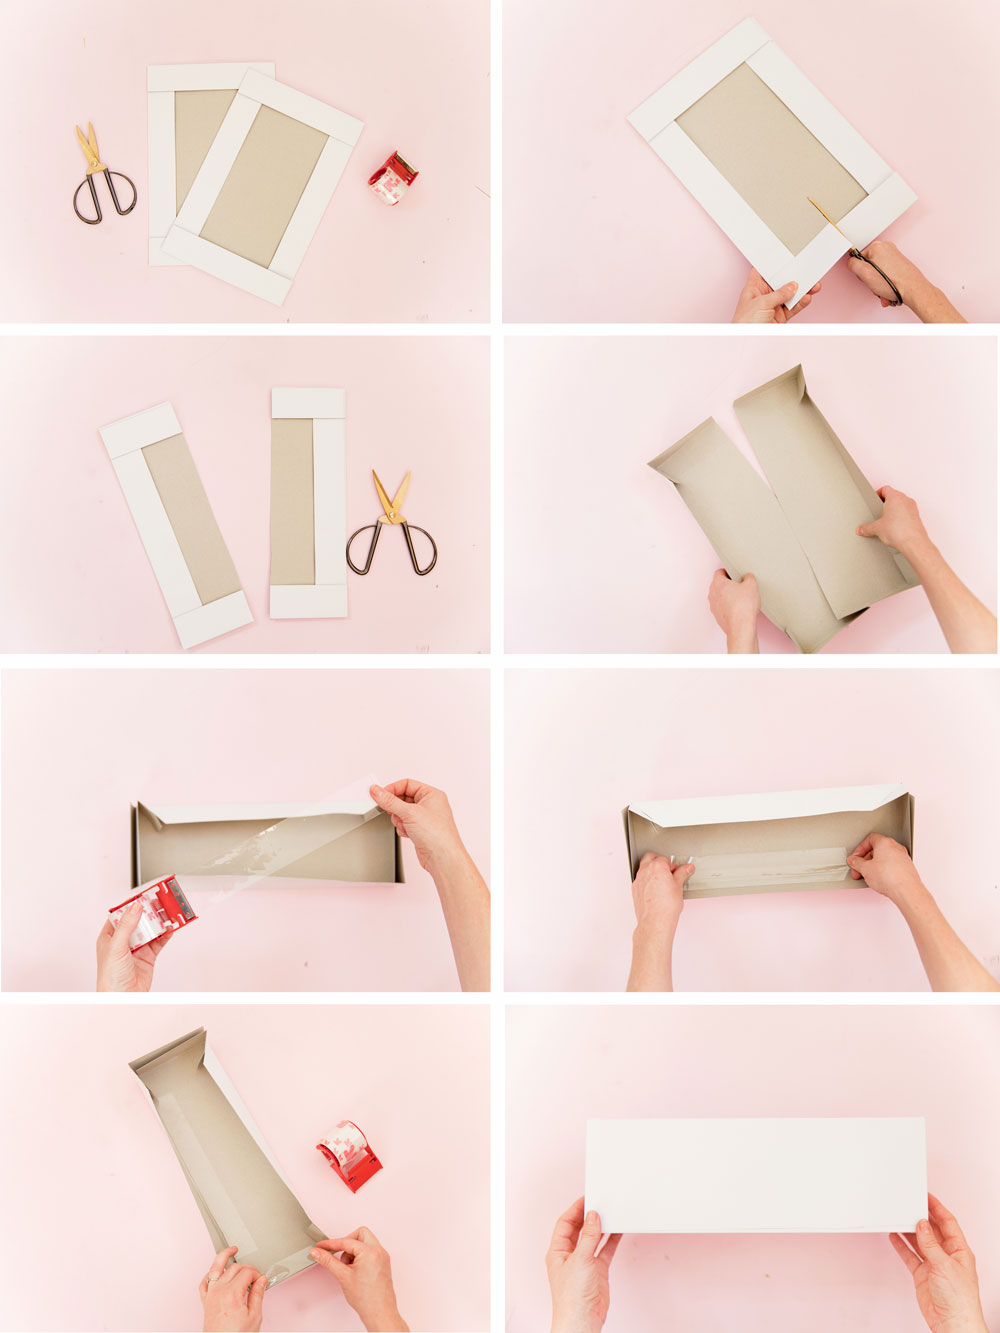 Завернуть подарок в оберточную. Как правильно упаковать подарок в подарочную бумагу. Как завернуть подарок в оберточную бумагу. Как правильно упаковать коробку в подарочную бумагу. Как правильно упаковывать подарки в упаковочную бумагу.